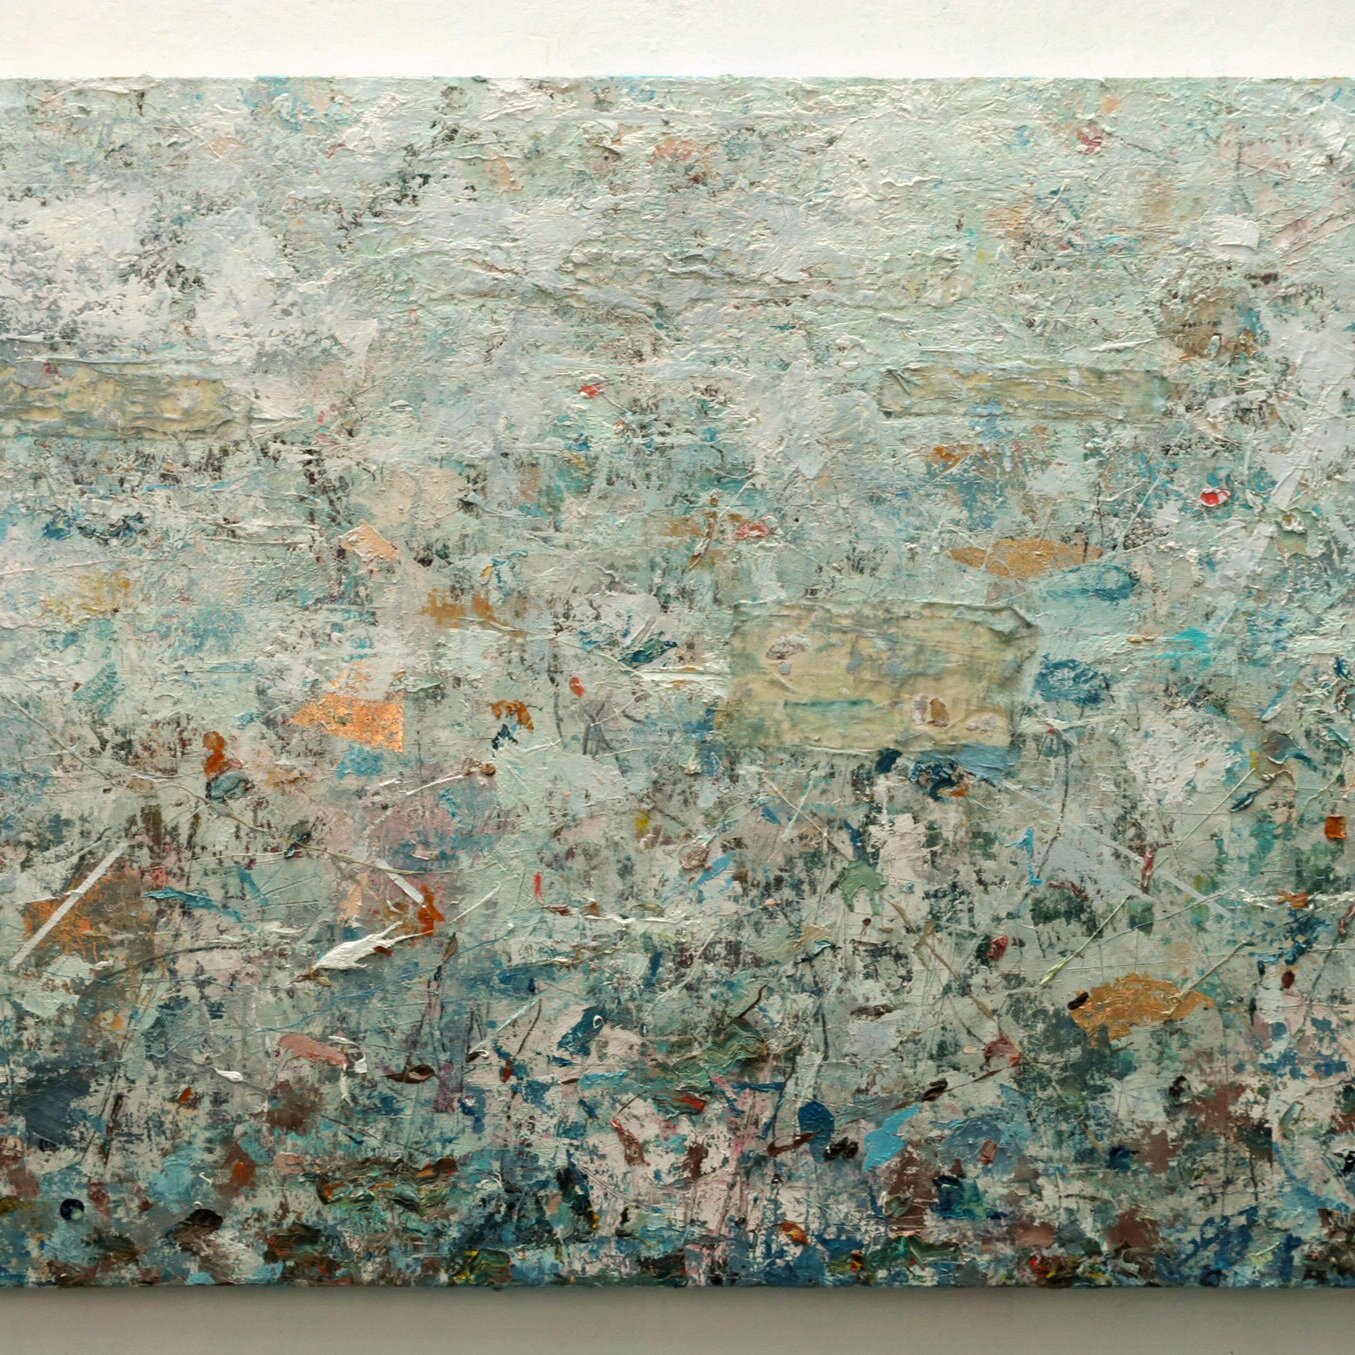   Eduardo Cardozo      Sin título   ,  2020 Óleo sobre tela 100 x 193 cm Galería SUR 